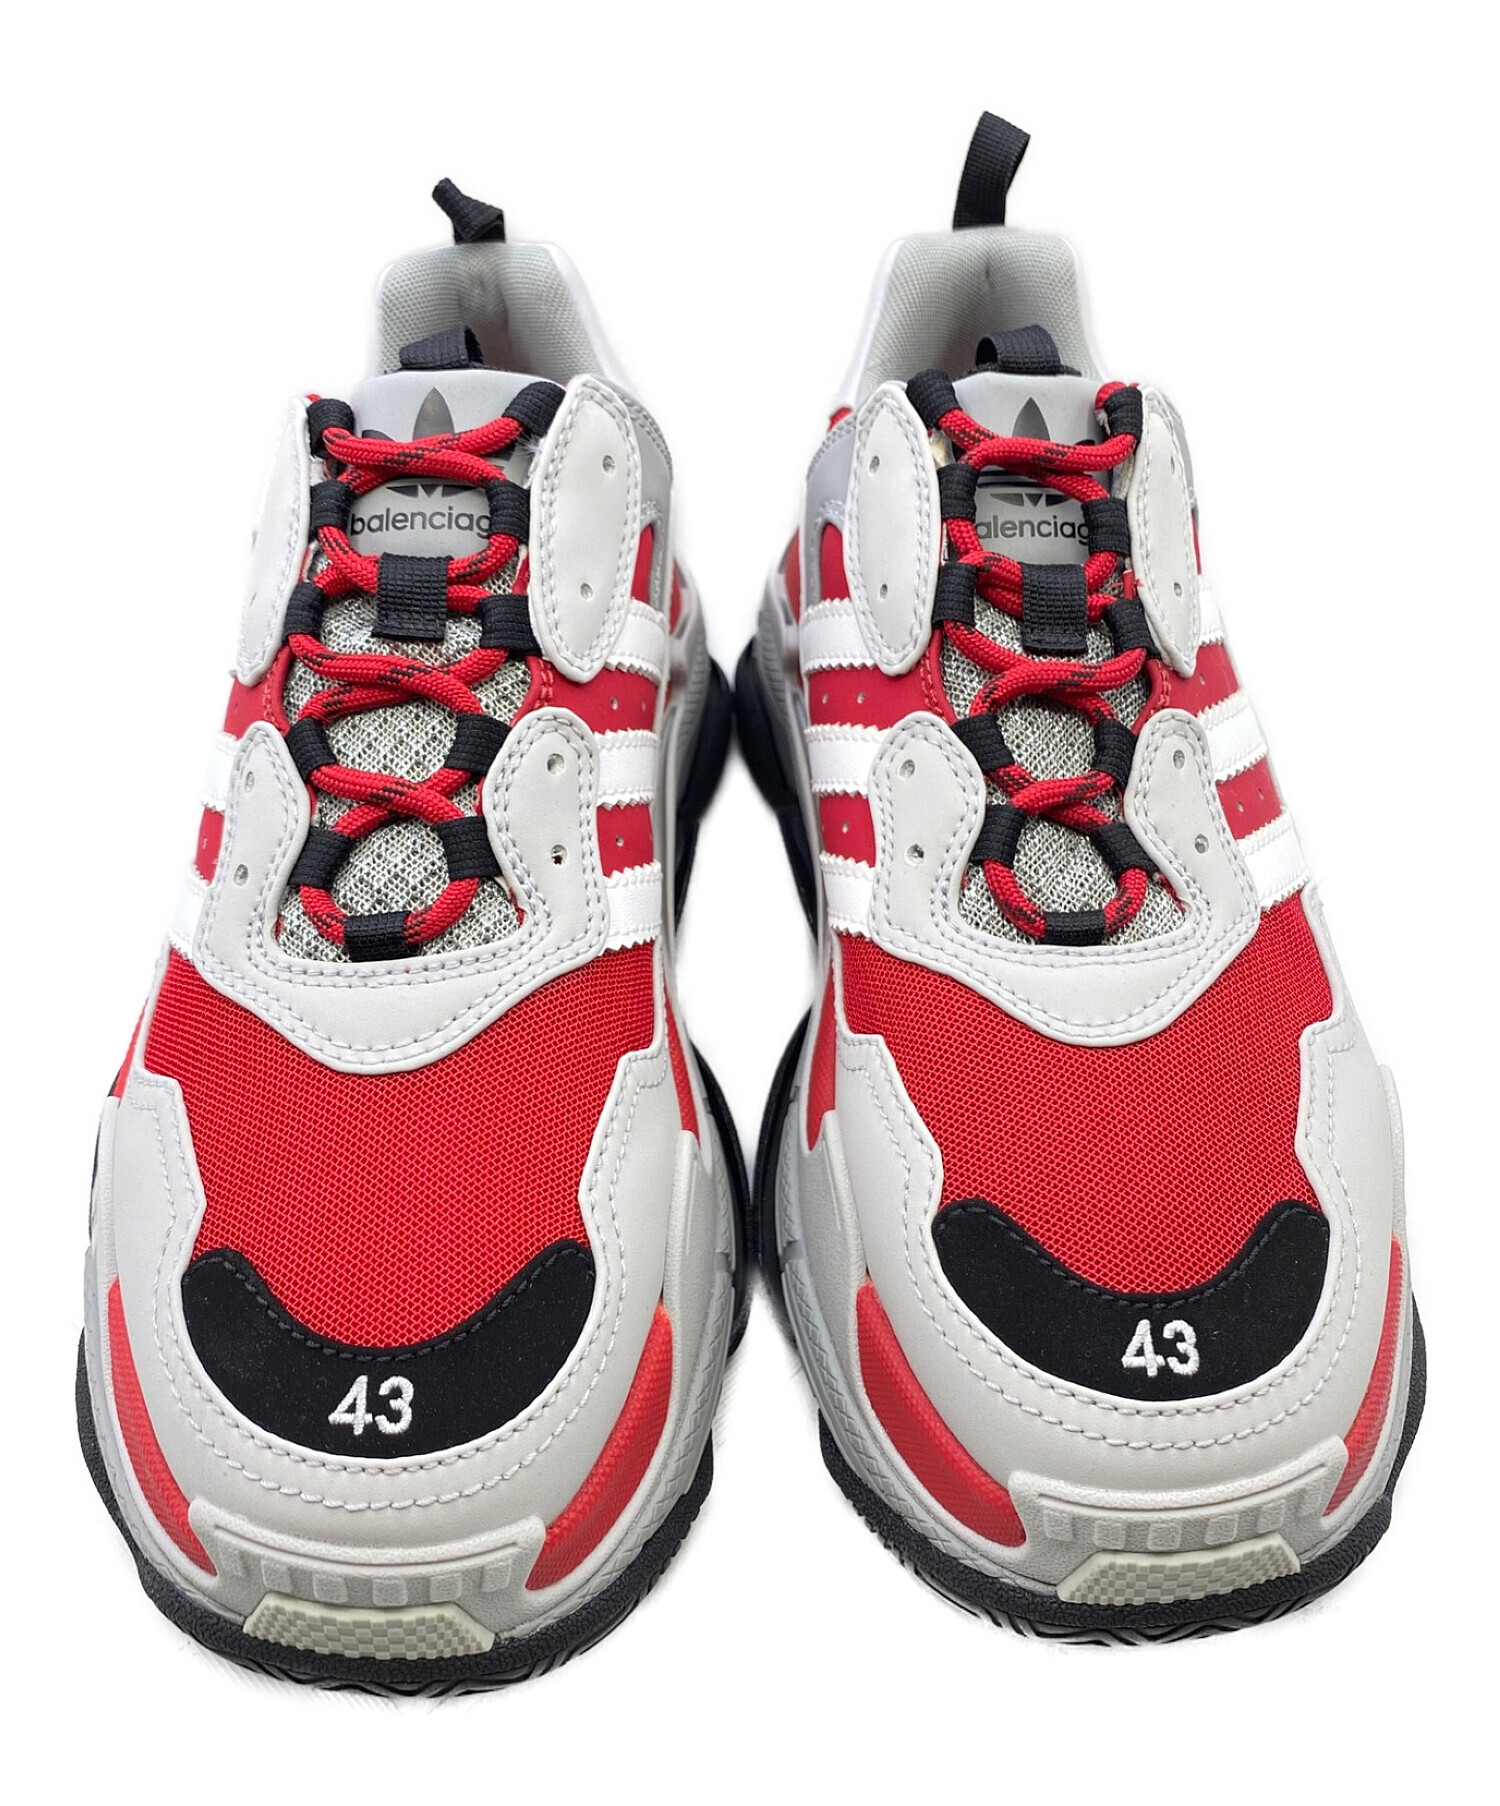 adidas (アディダス) BALENCIAGA (バレンシアガ) TRIPLE S レッド×グレー サイズ:43